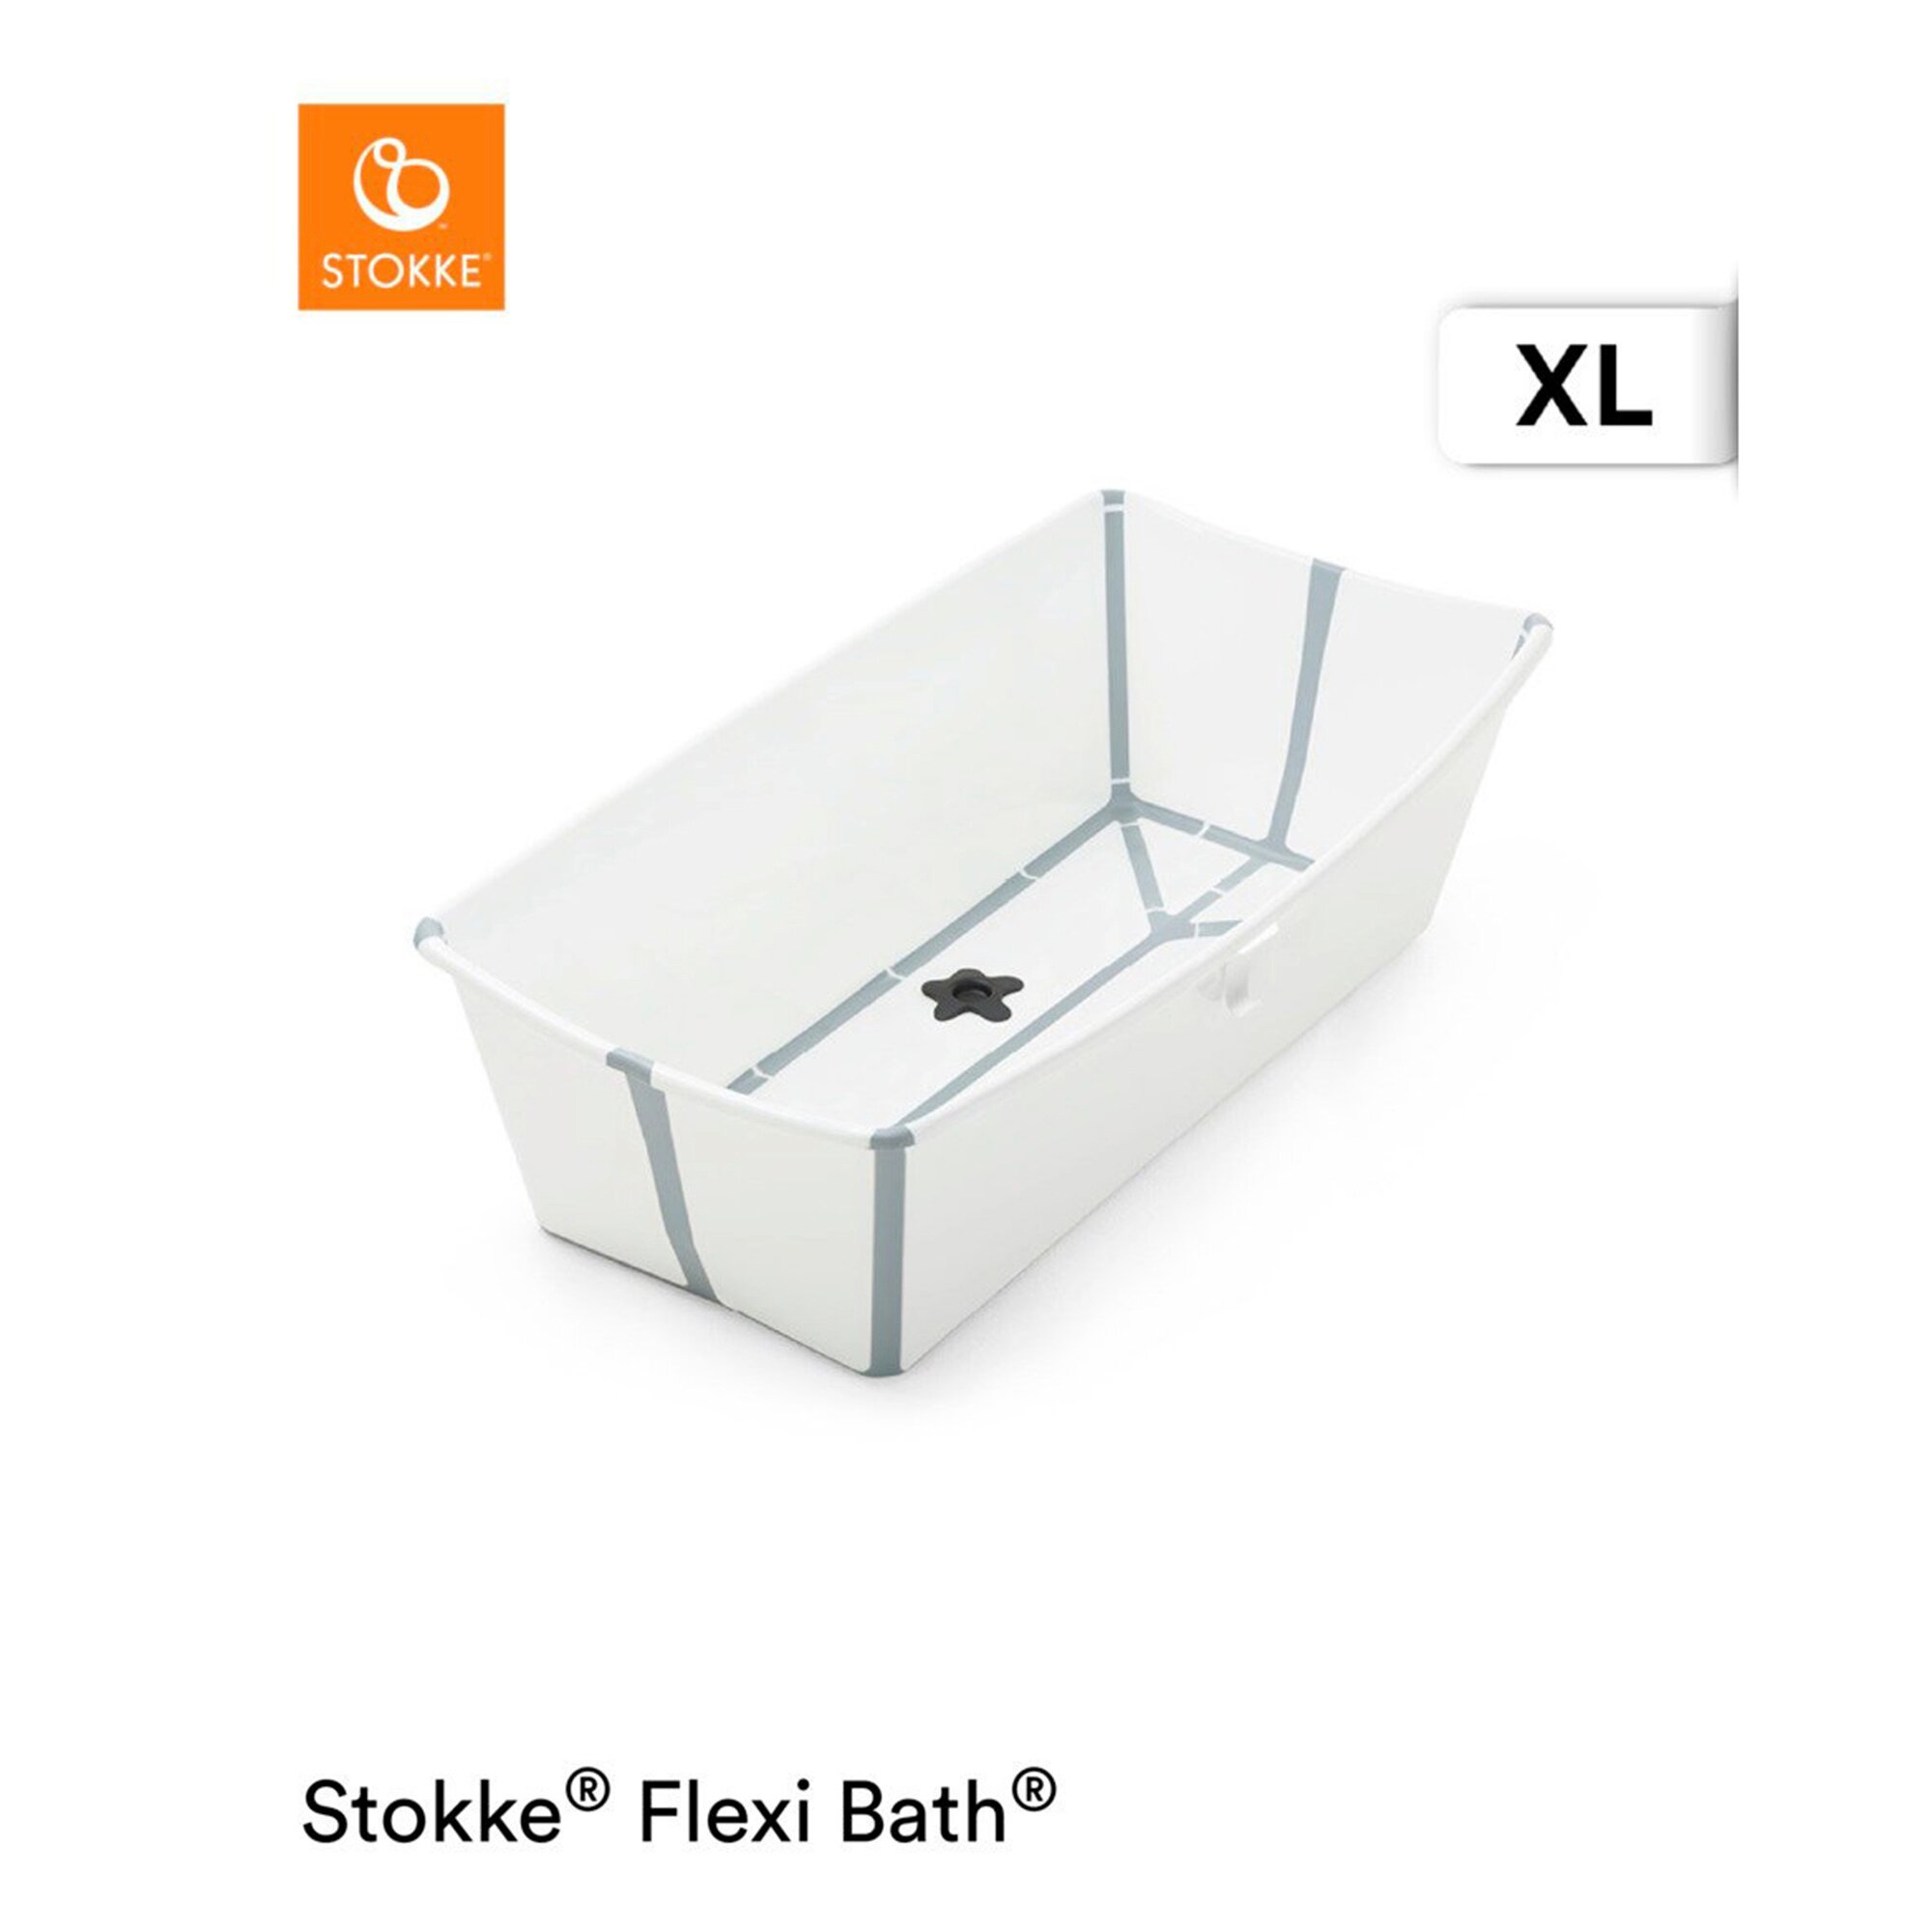 Stokke Flexi Bath XL - Badewanne für Babys, Kleinkinder & Kinder - Extrem leicht und zusammenklappbar - Farbe: XL White